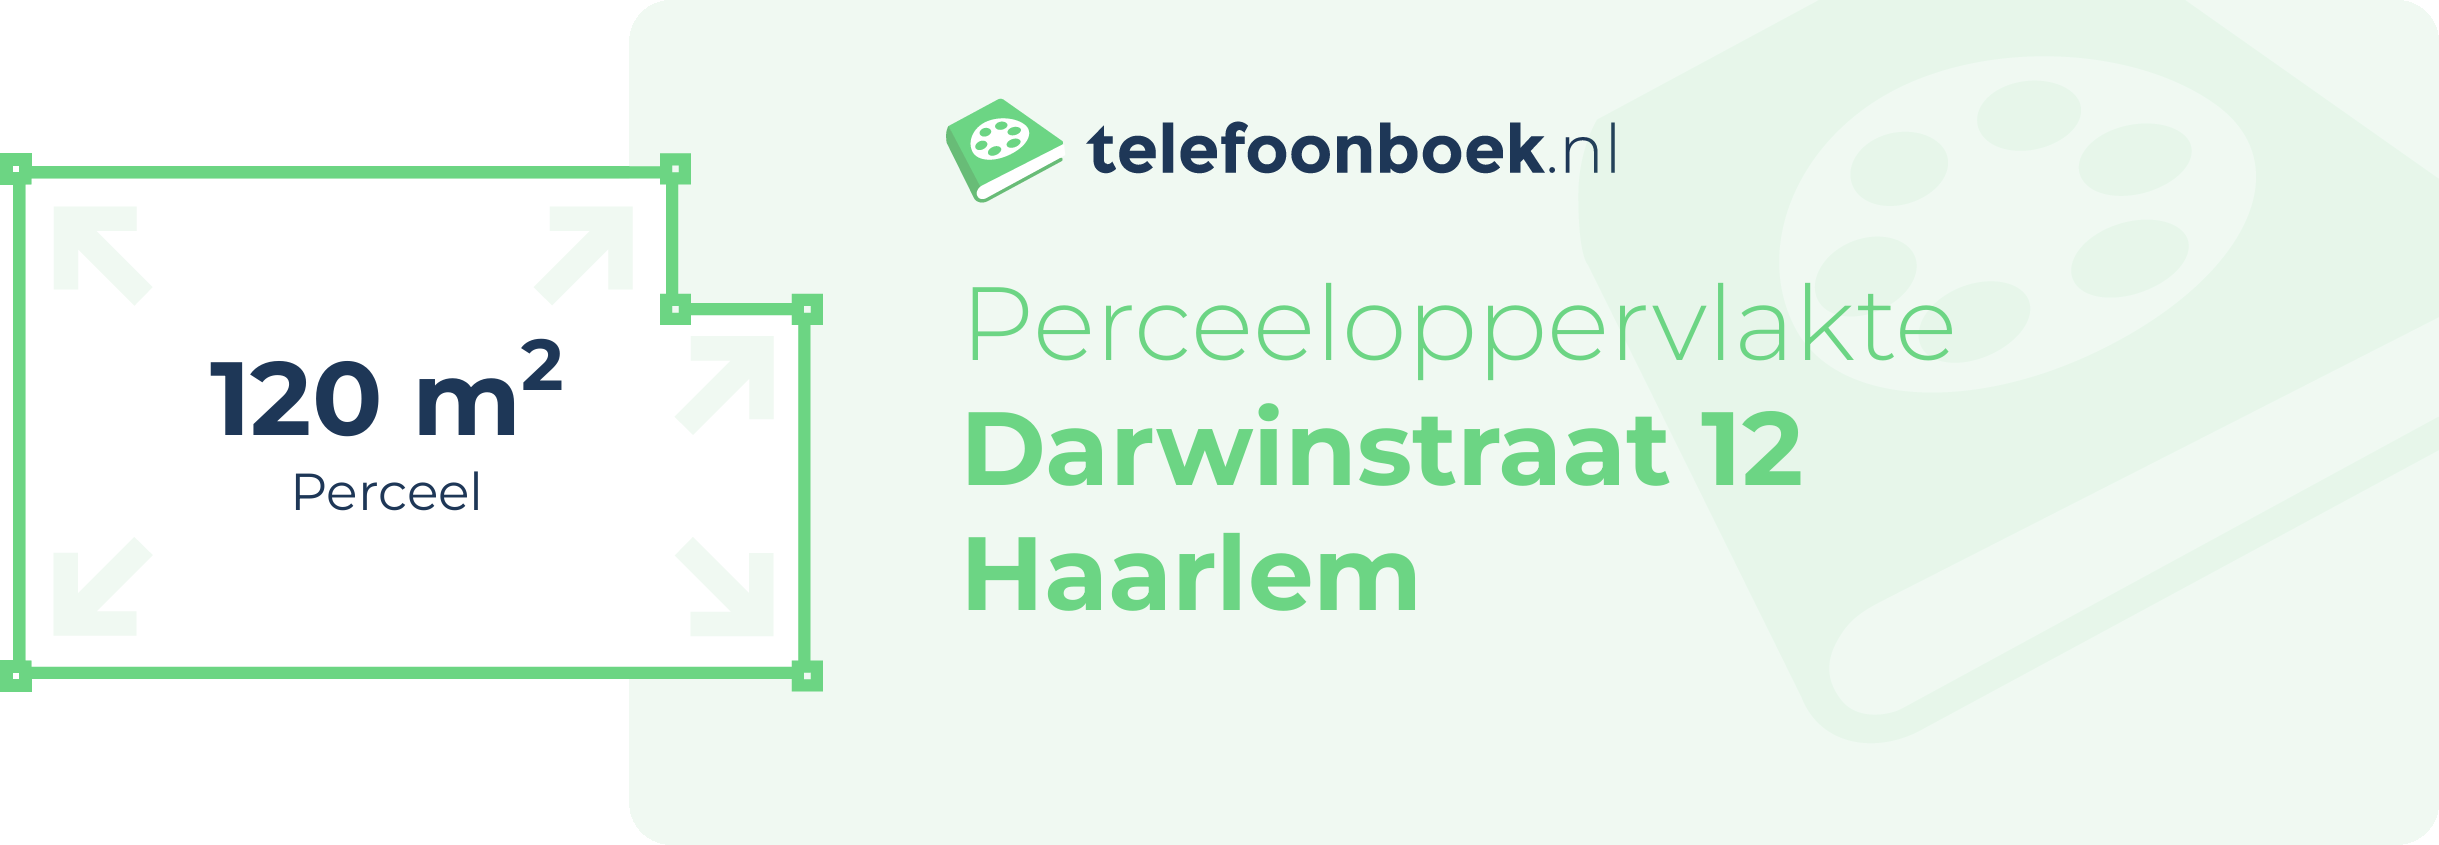 Perceeloppervlakte Darwinstraat 12 Haarlem